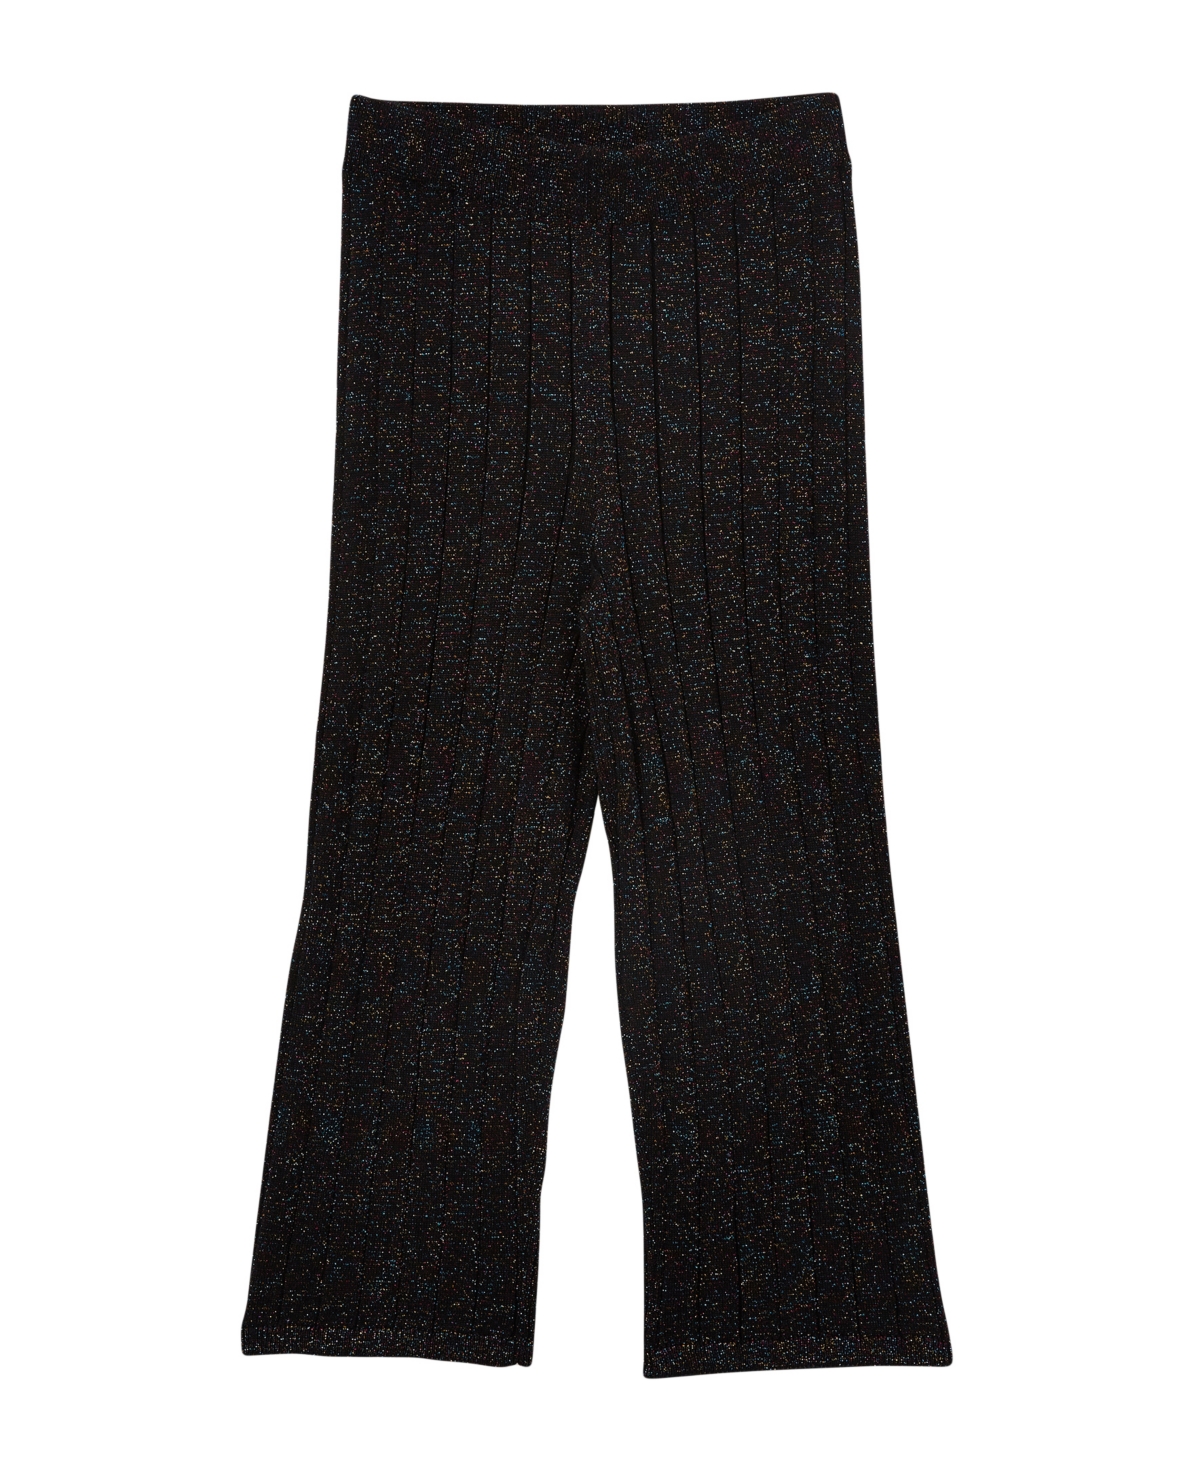 Cotton On Kids' Little Girls Jenna Lurex Knit Pants In Black Rainbow Sparkle